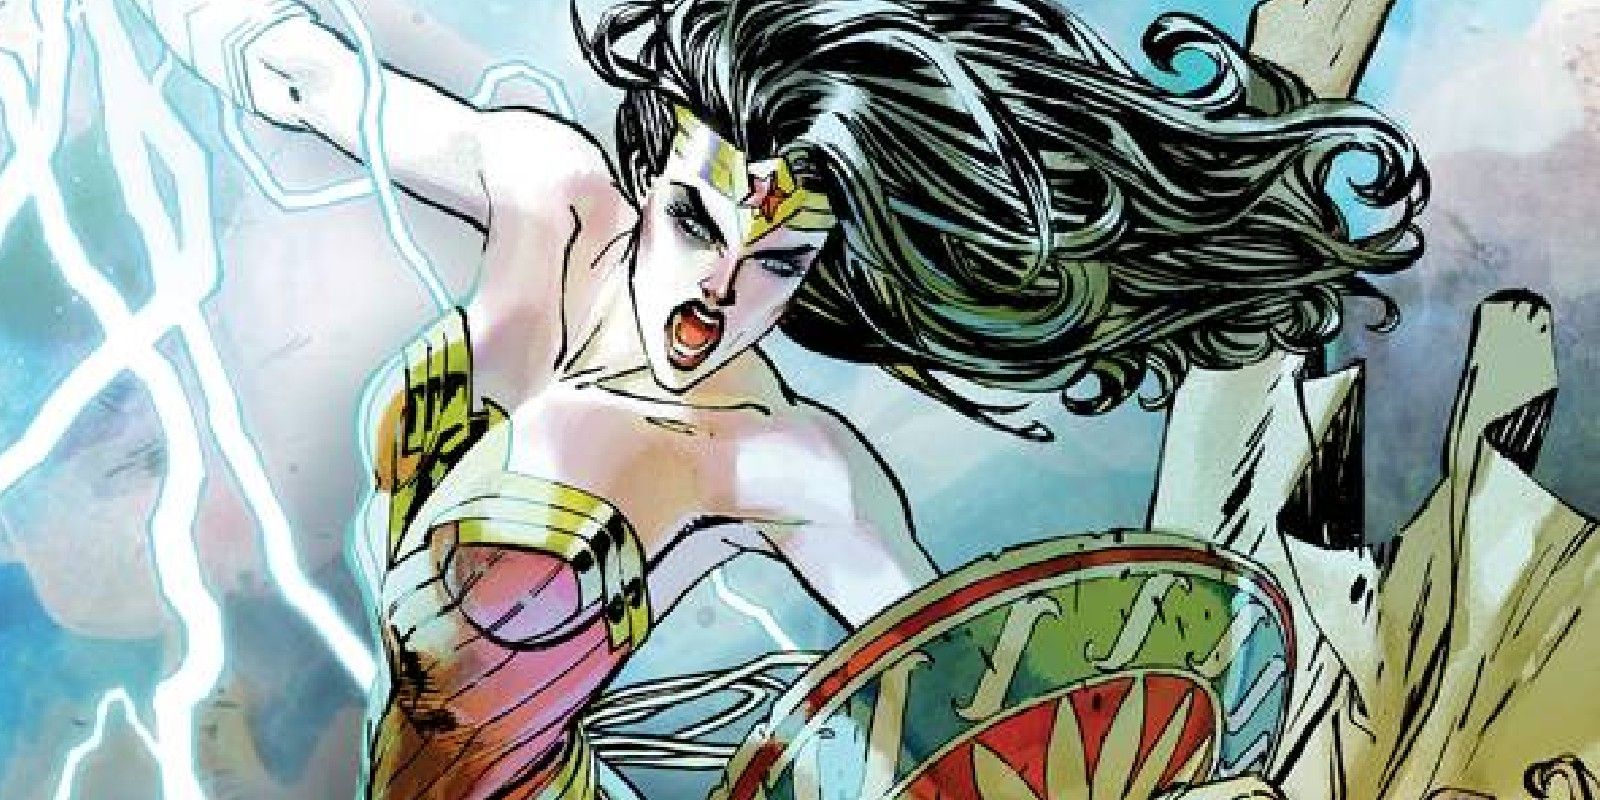 Las amazonas de Wonder Woman han sido abandonadas por los dioses (literalmente)